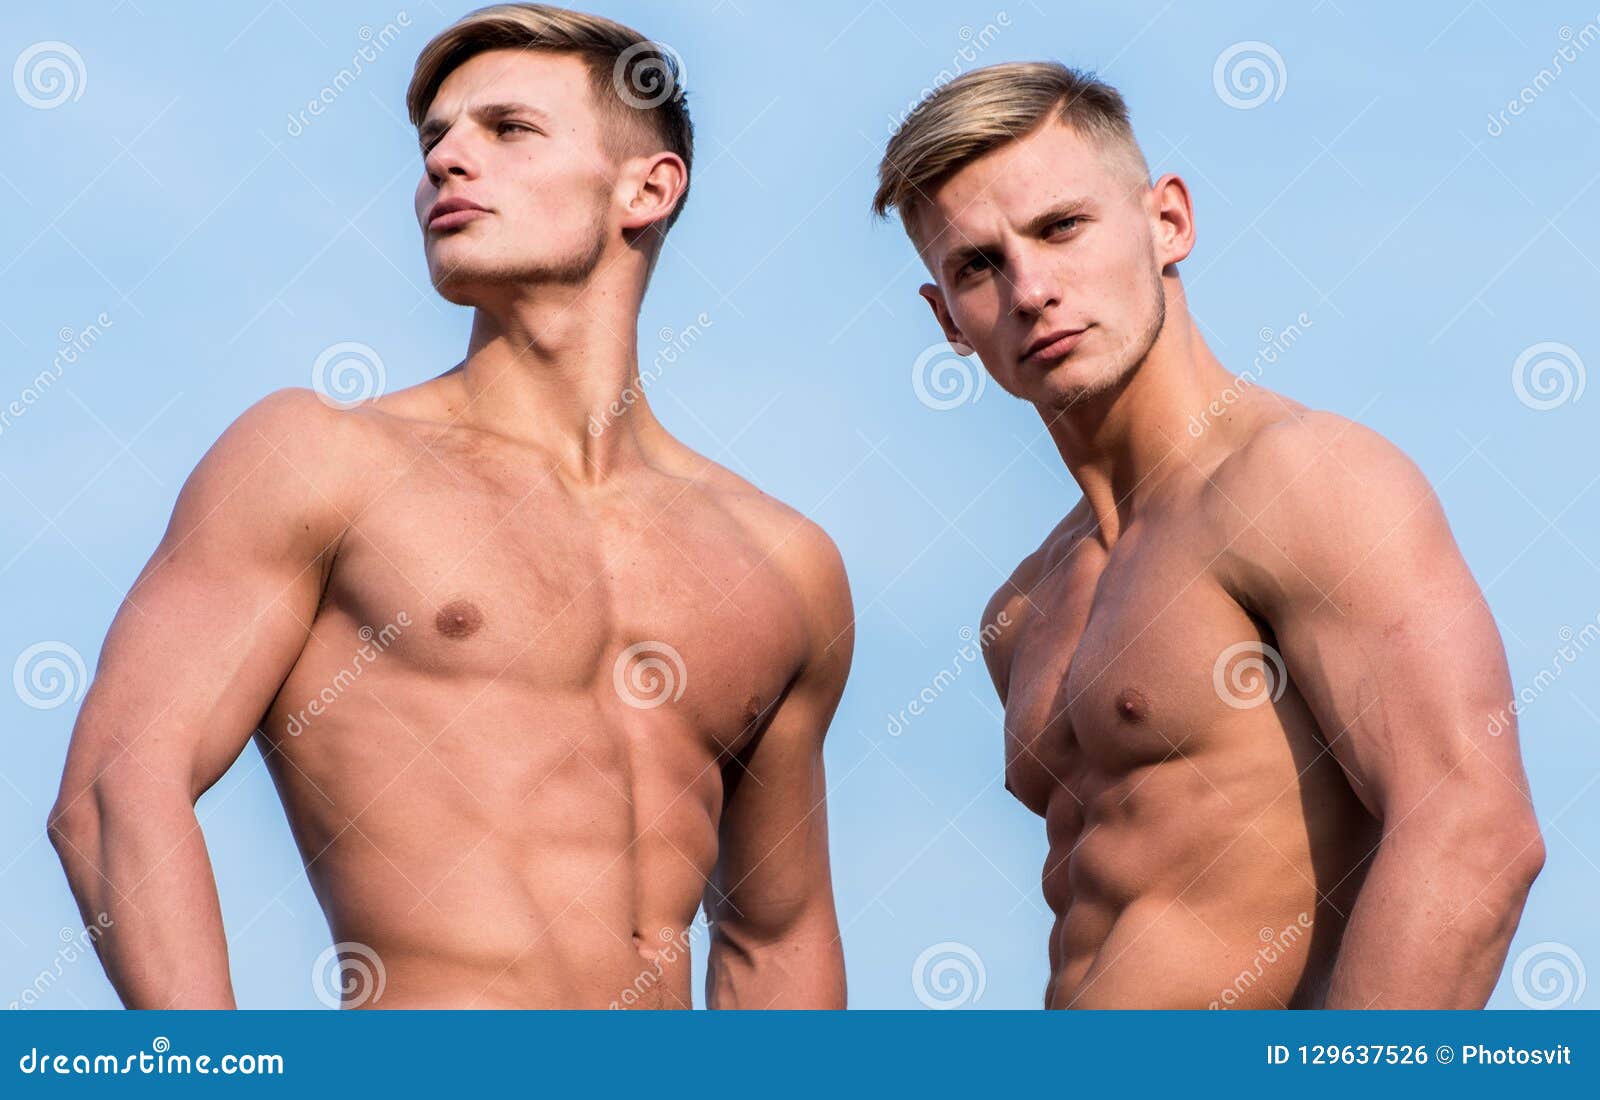 Naked Male Athletes